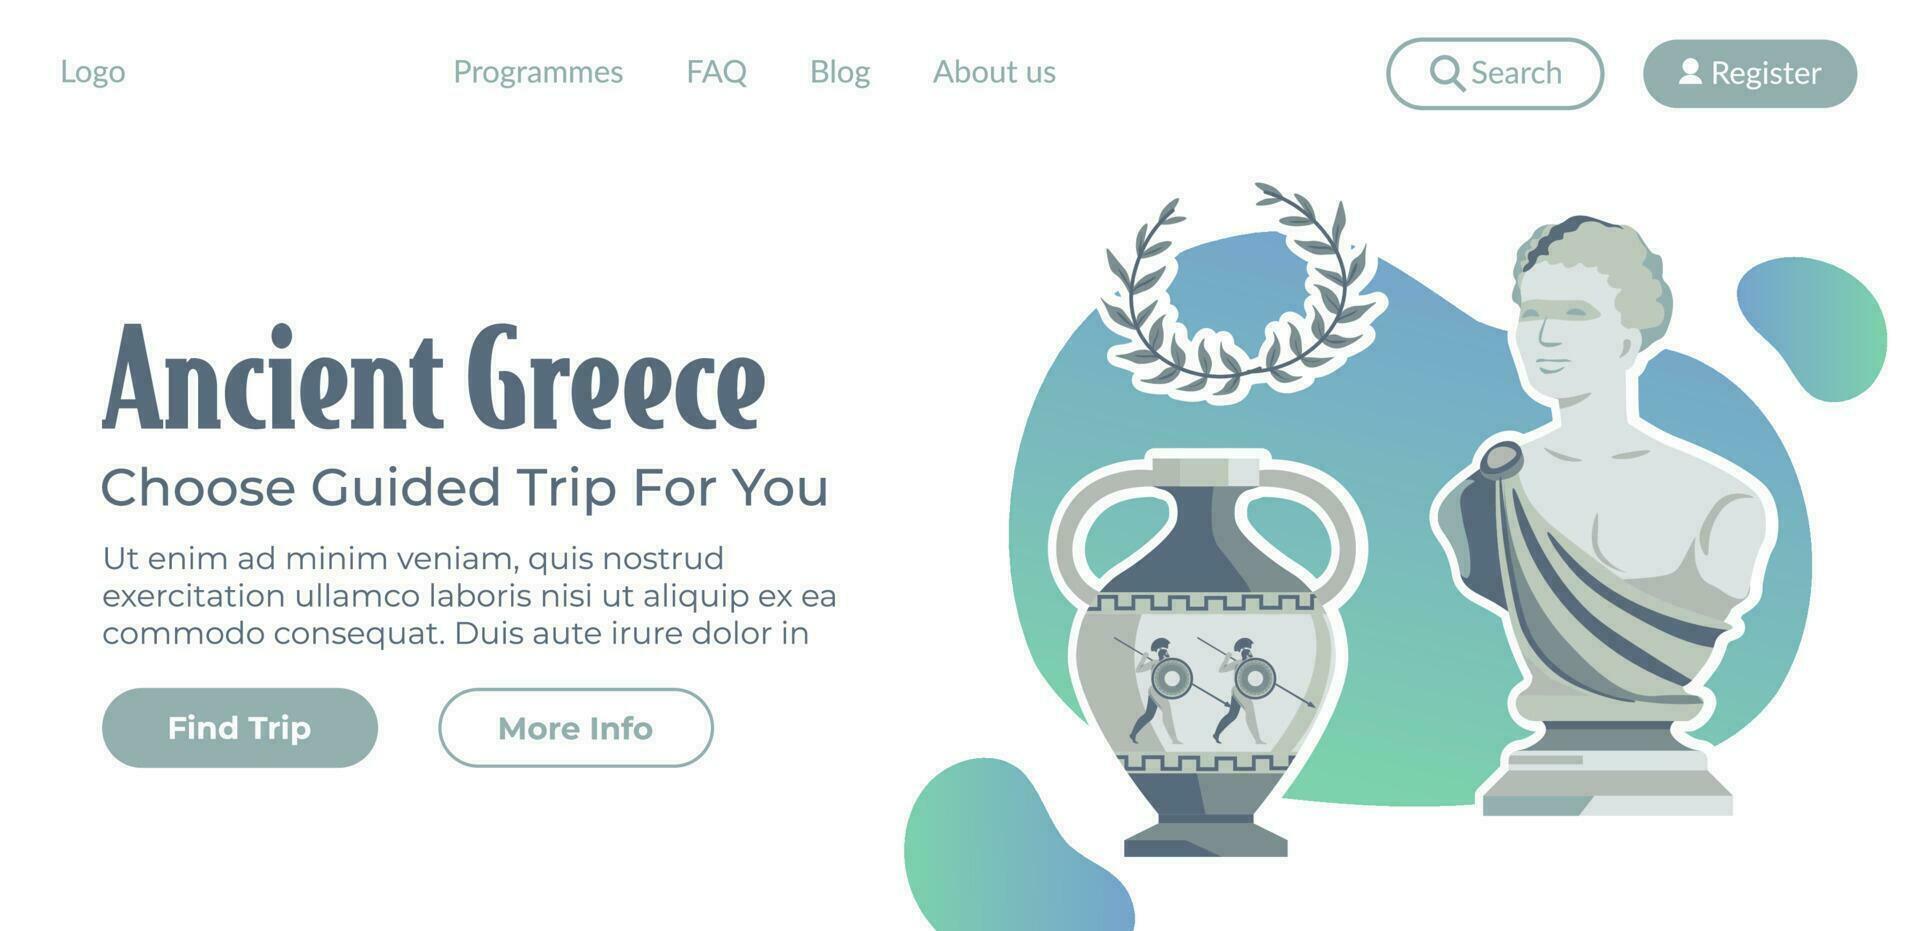 uralt Griechenland wählen geführt Ausflug zum Sie Vektor